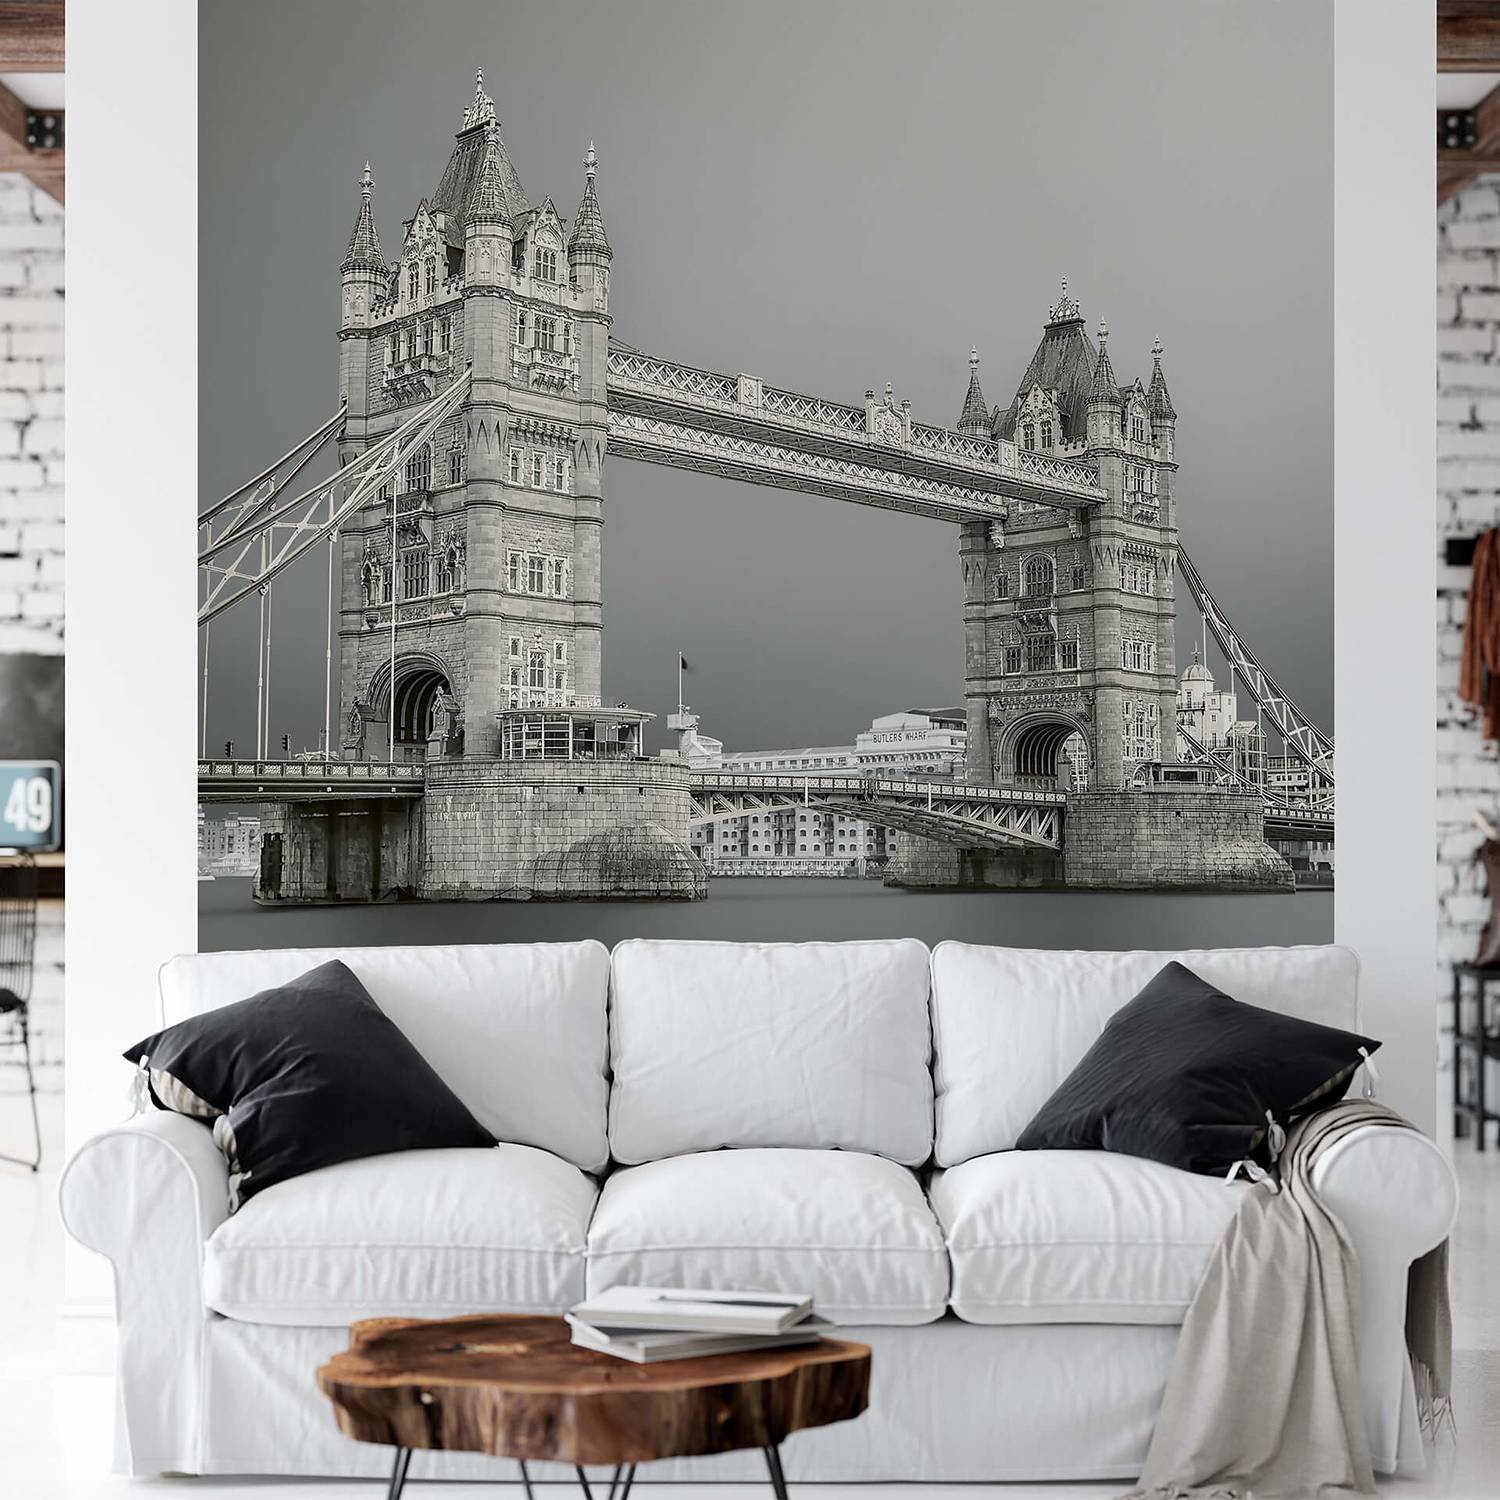 Fototapete Tower Bridge London von A.S. Création